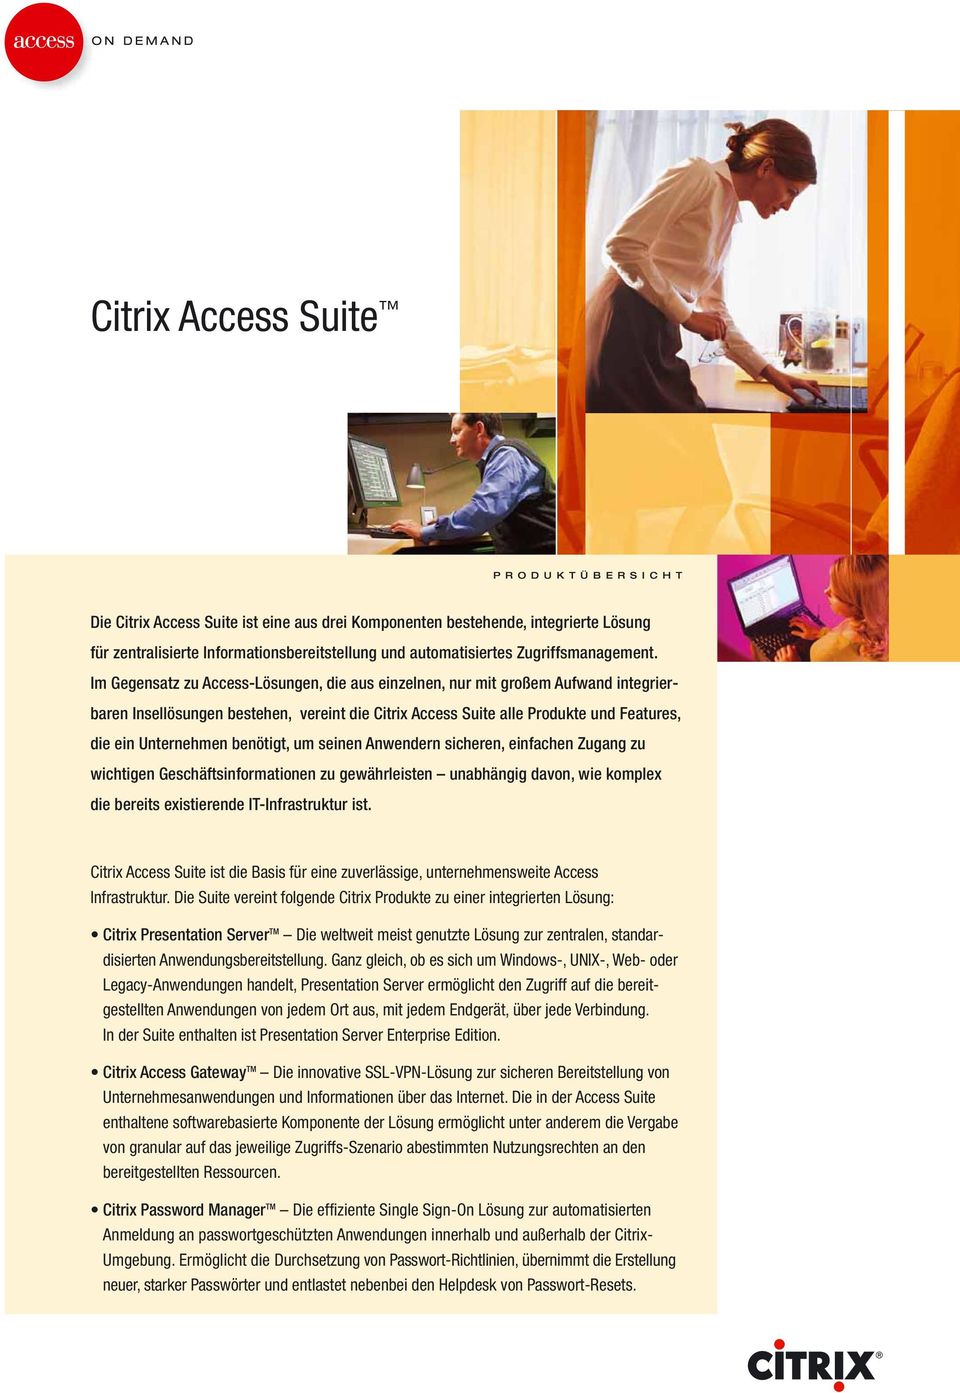 Im Gegensatz zu Access-Lösungen, die aus einzelnen, nur mit großem Aufwand integrierbaren Insellösungen bestehen, vereint die Citrix Access Suite alle Produkte und Features, die ein Unternehmen